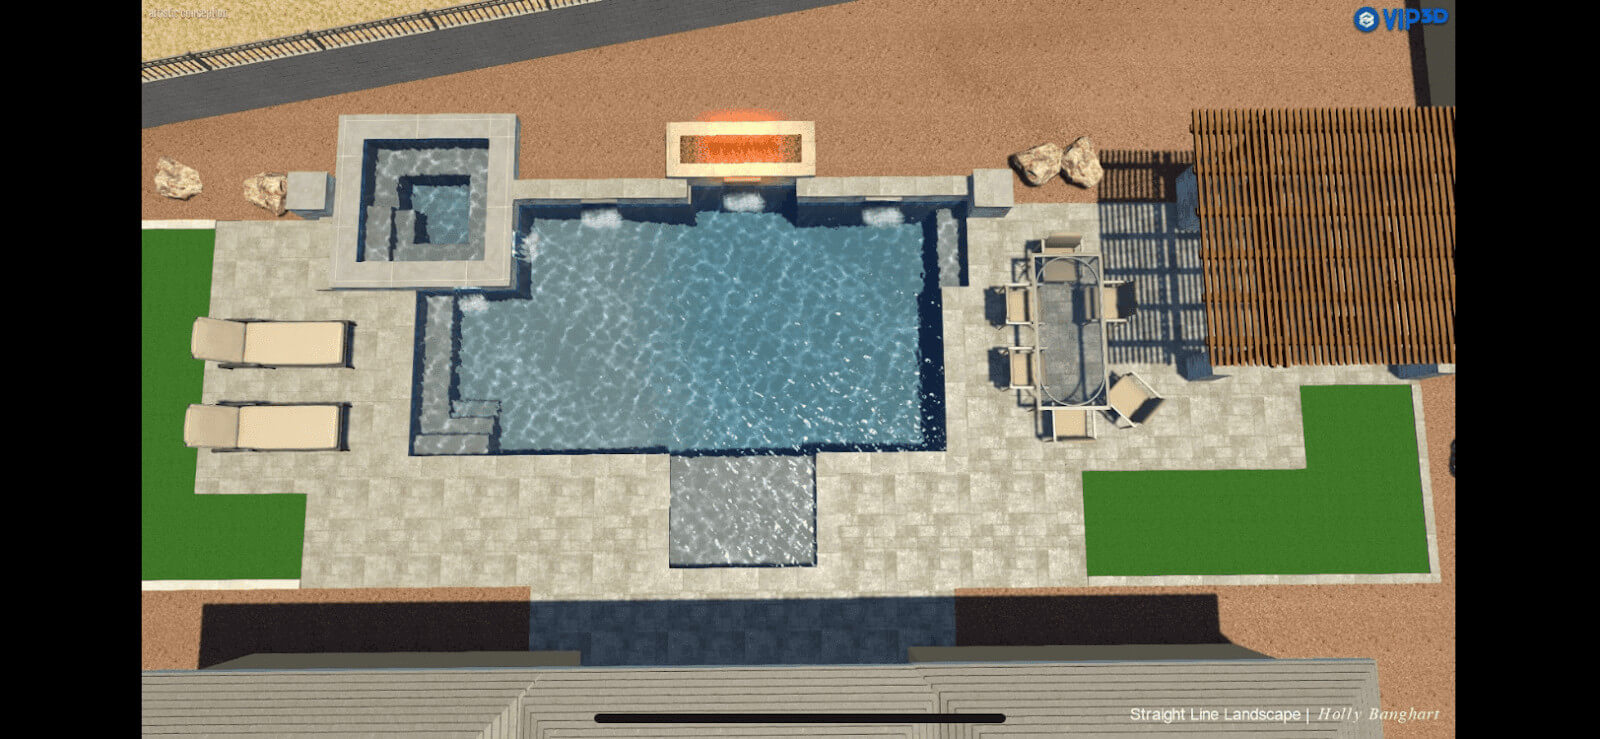 backyard-pool-design.jpg